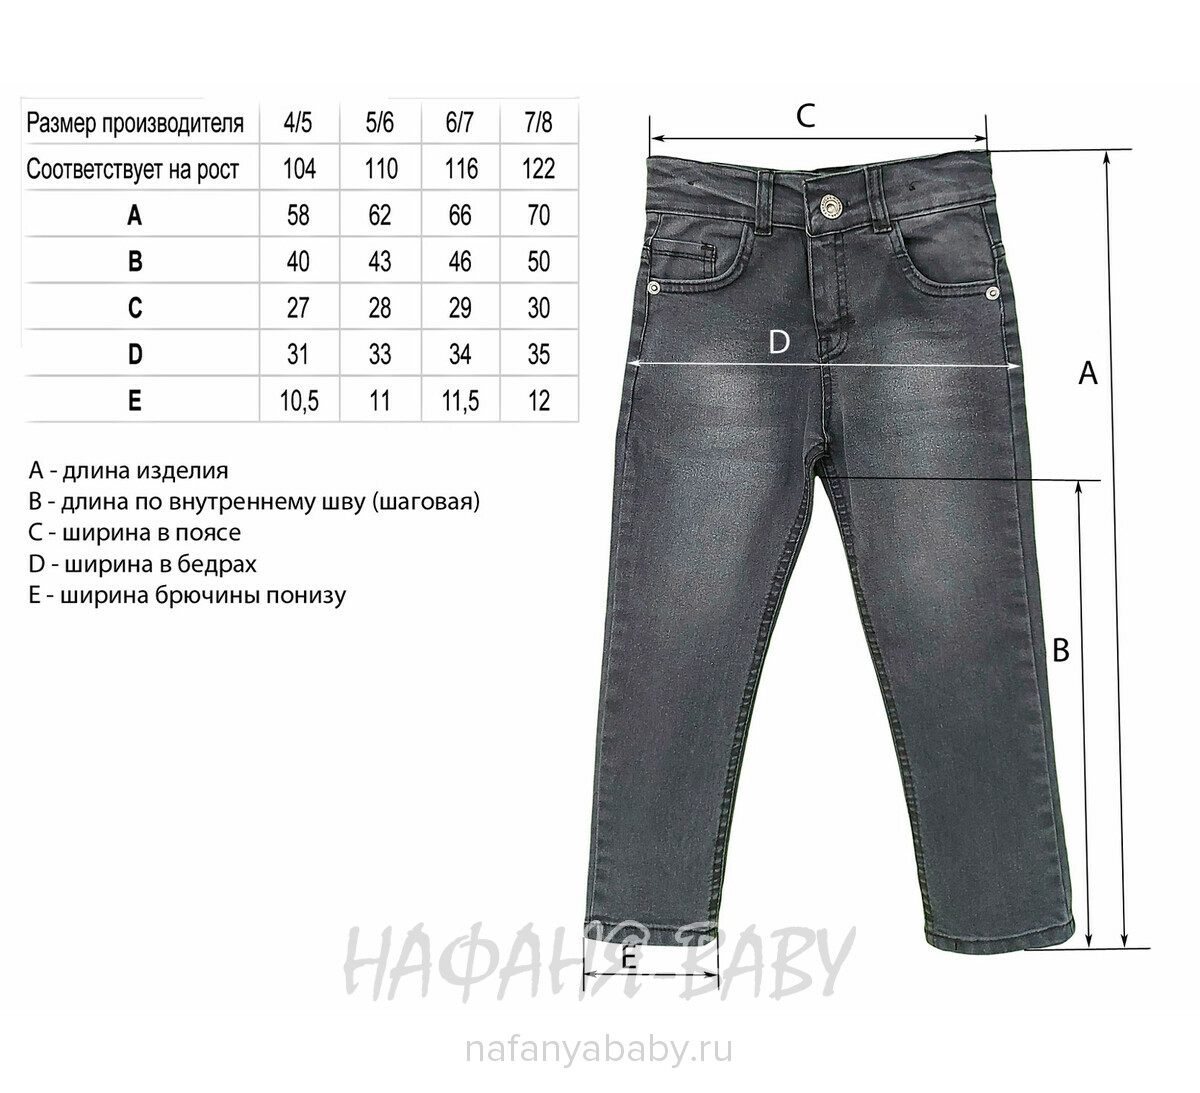 Детские джинсы YAVRUCAK арт: 4200 для мальчика от 3 до 7 лет, цвет темно-серый, оптом Турция